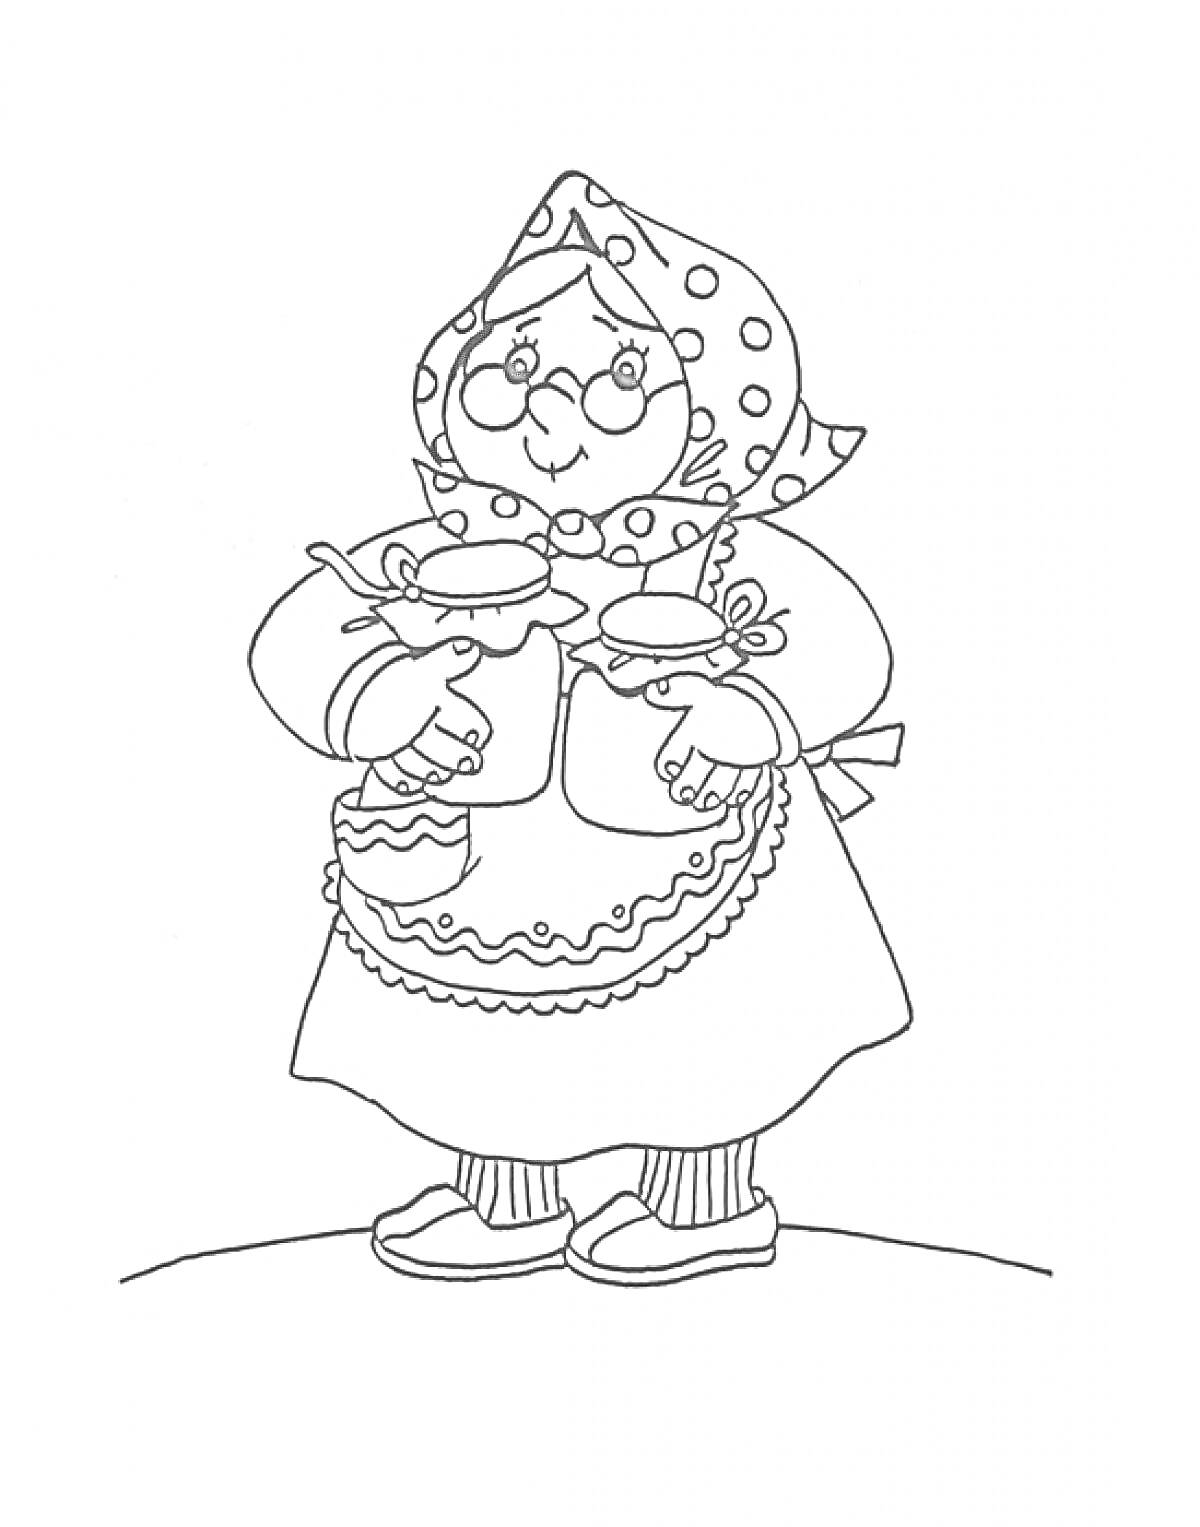 Бабушка с банками варенья в фартуке и платке